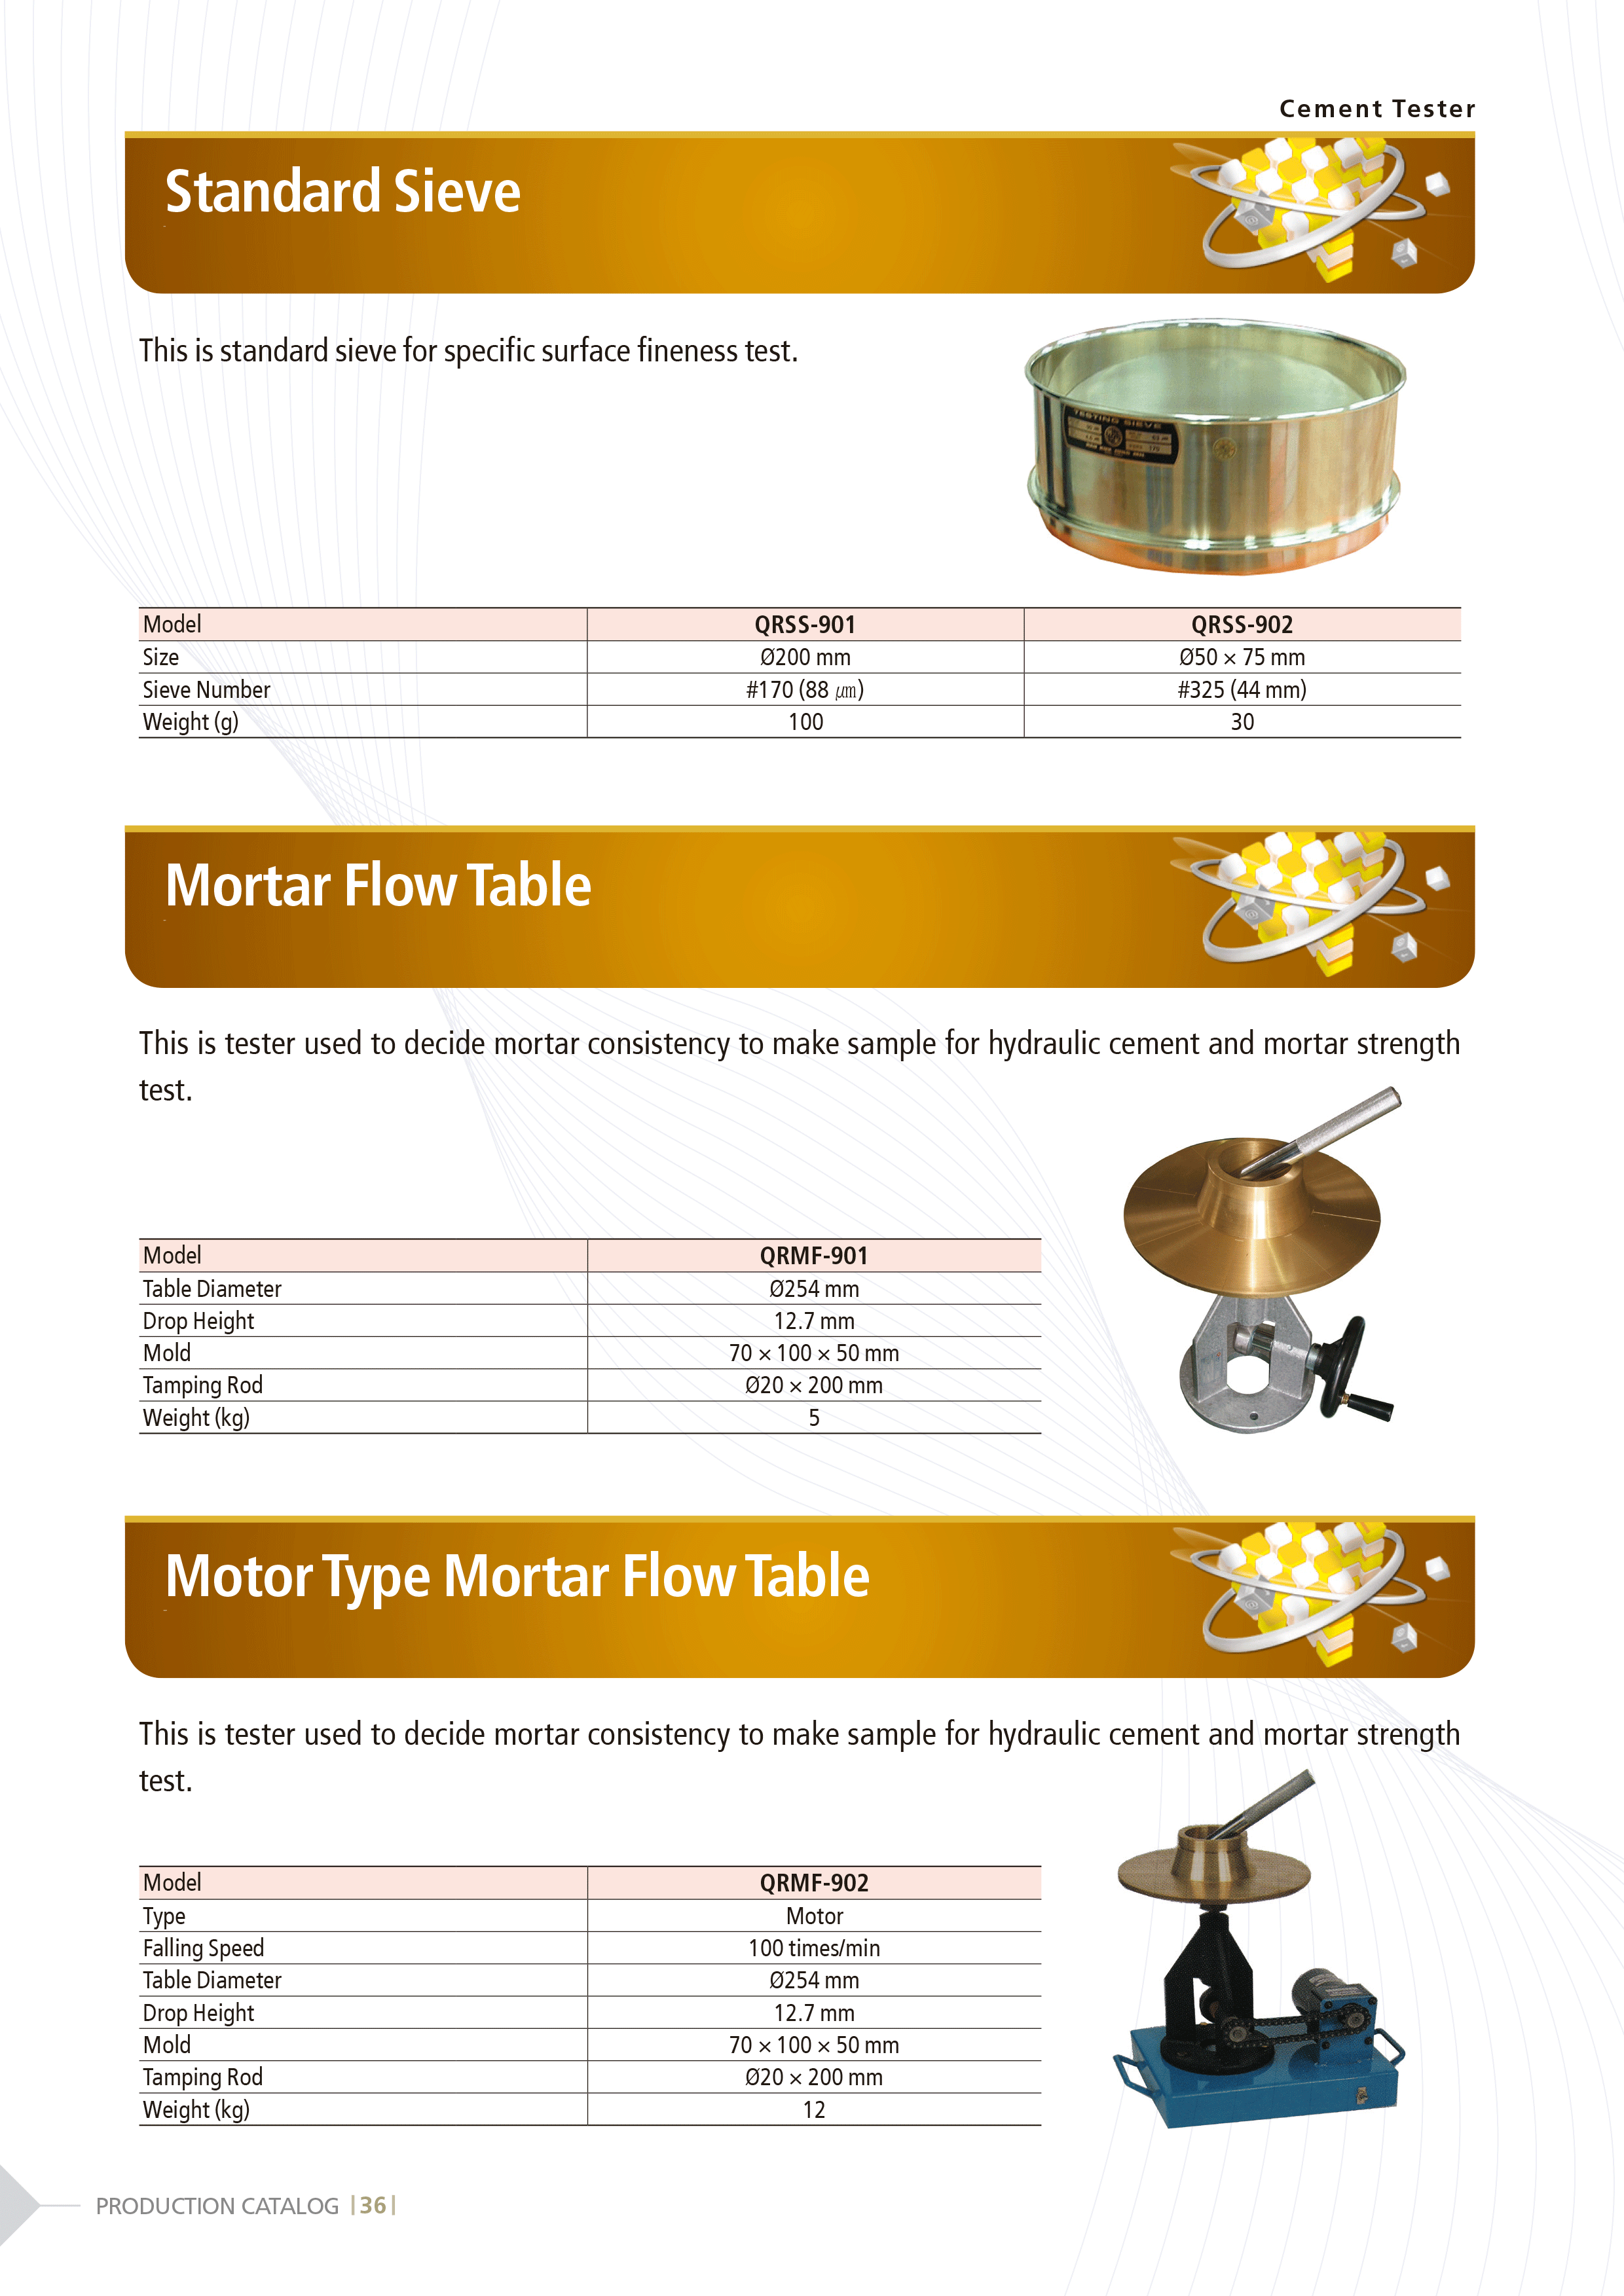 Mortar_Flow_Table.gif